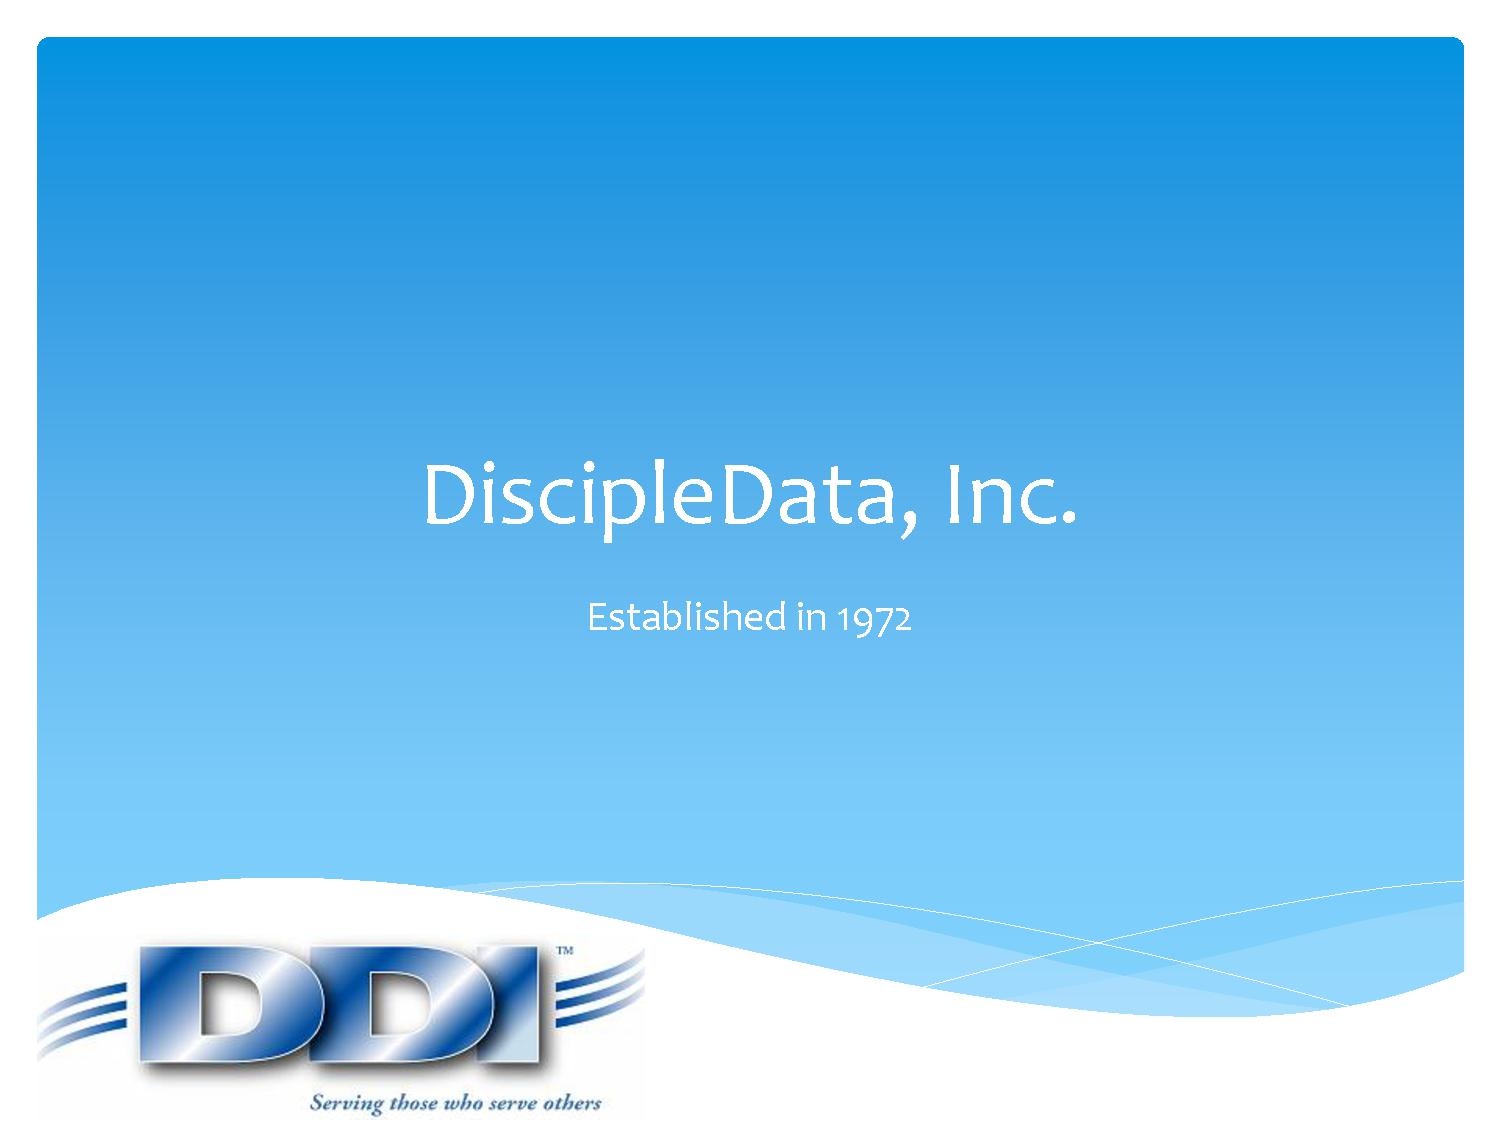 DiscipleData, Inc.pdf